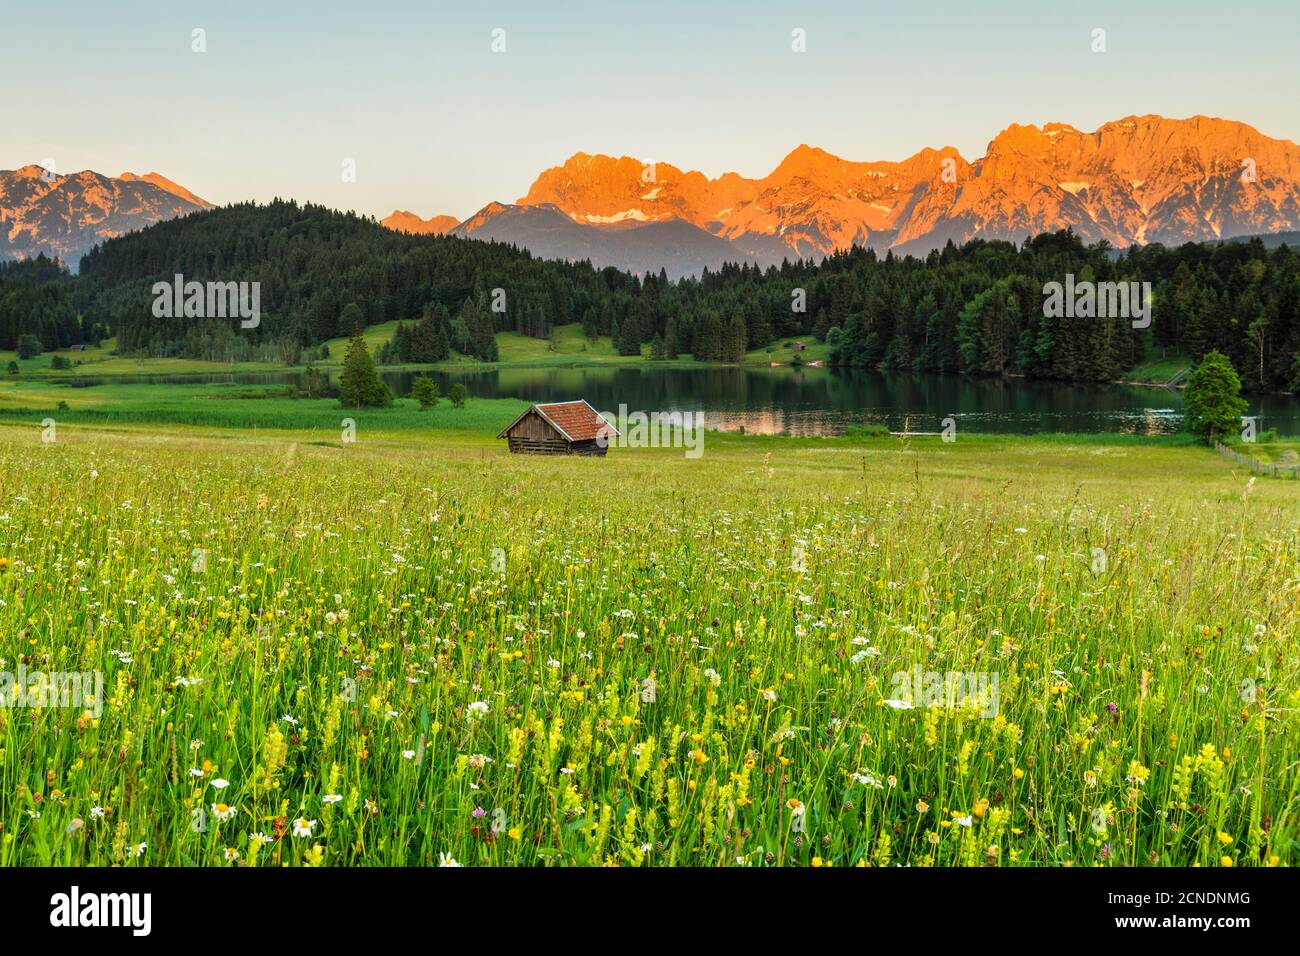 Geroldsee Lake against Karwendel Mountains at sunset, Klais, Werdenfelser Land, Upper Bavaria, Germany, Europe Stock Photo